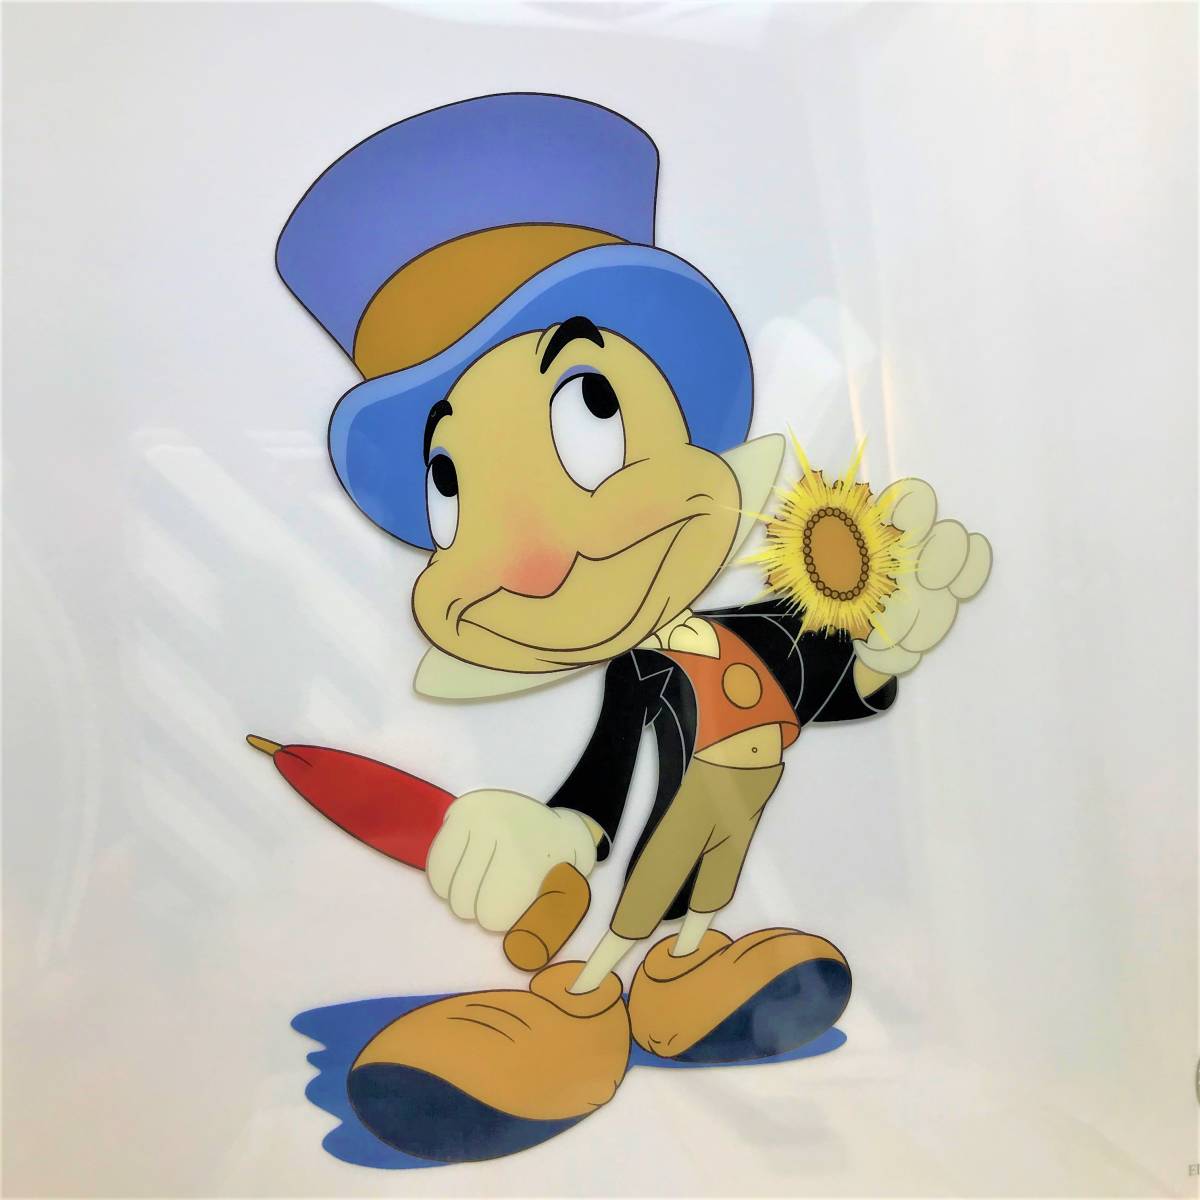 5000枚限定 セル画★ピノキオ Pinocchio ジミニー・クリケット Jiminy Cricket セリグラフ 壁掛け 額縁 絵 証明書★ディズニー Disney TDL